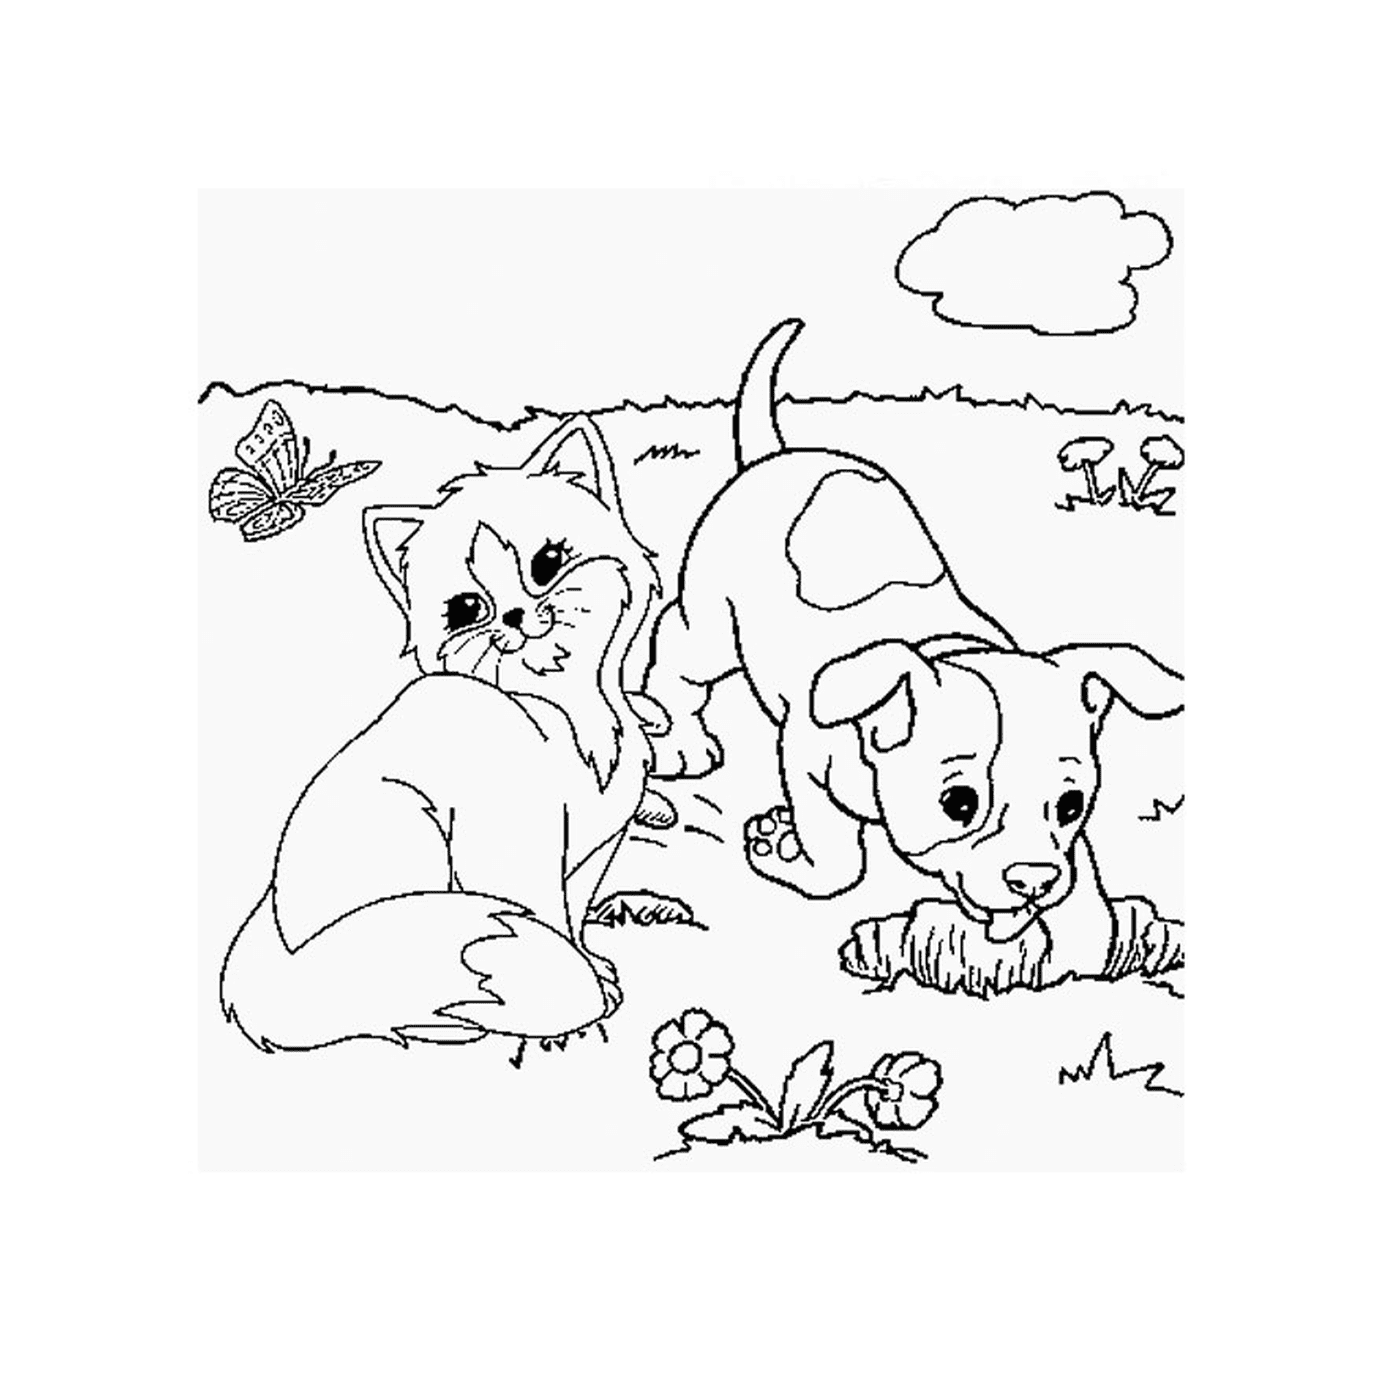  جرو وقطرة تلعب في العشب 